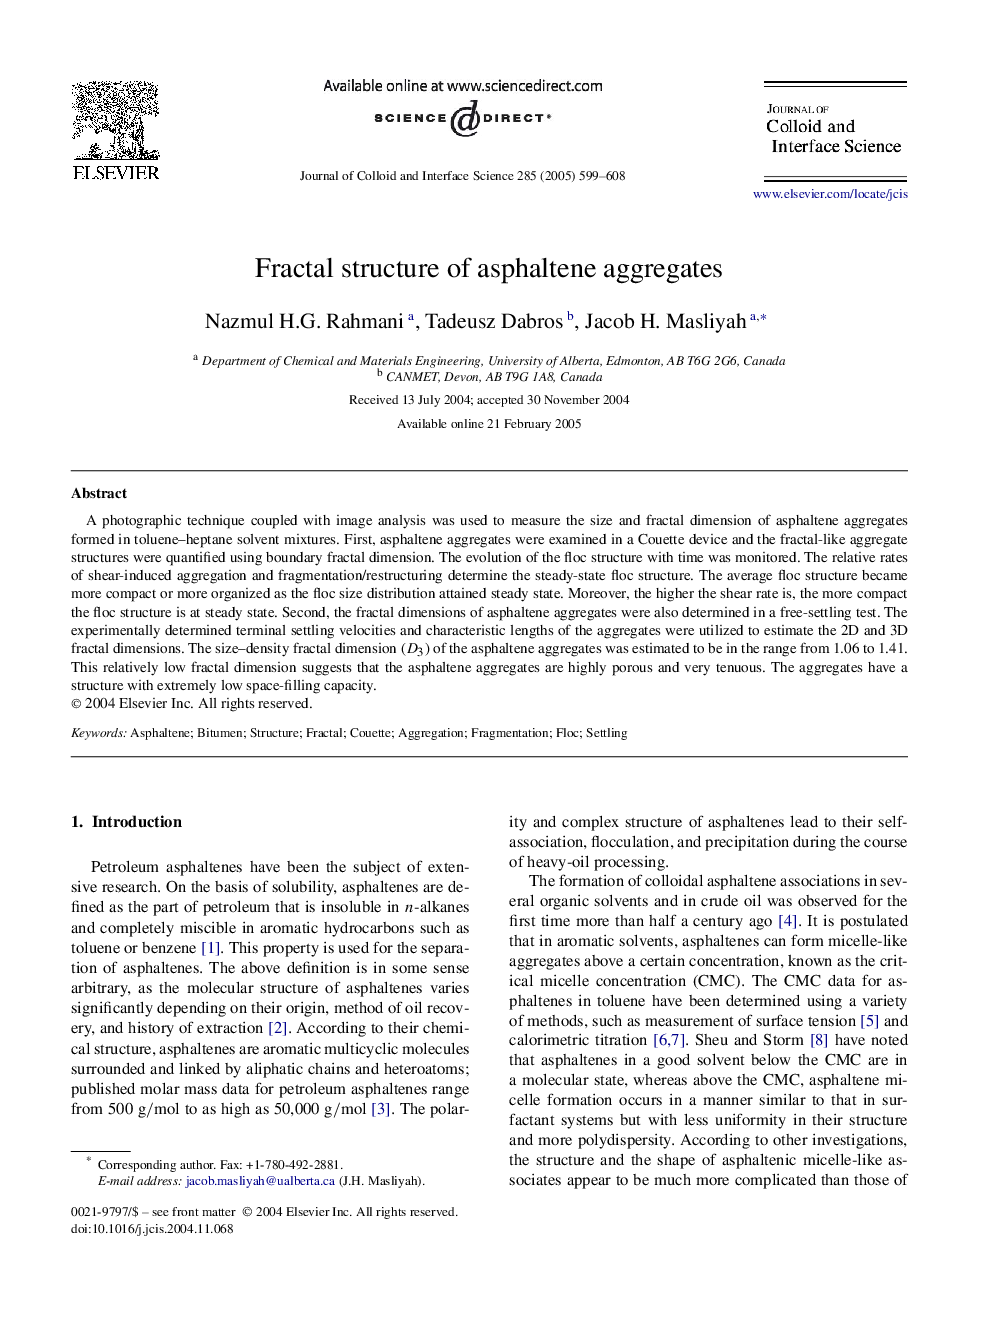 Fractal structure of asphaltene aggregates